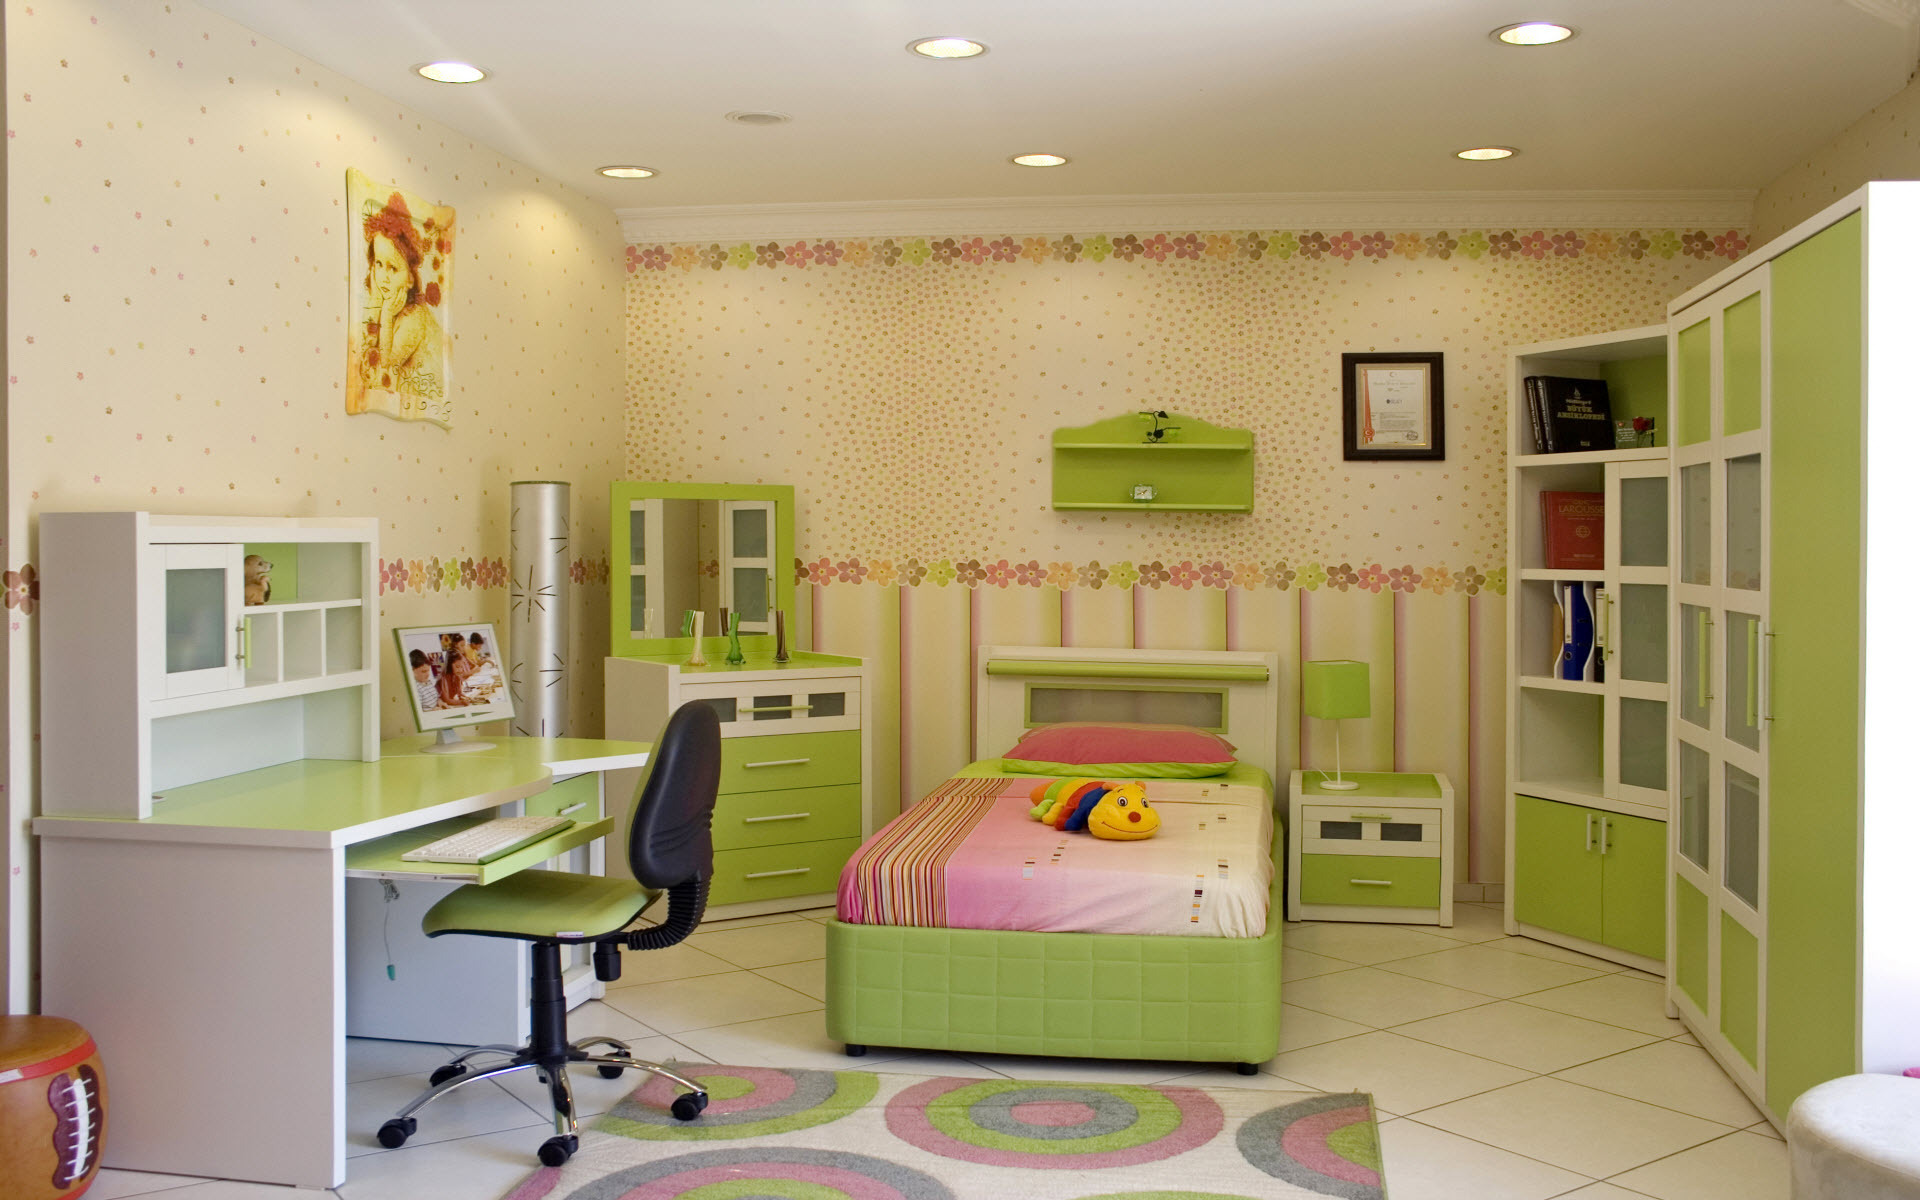 Tapet pentru o cameră mare pentru copii, în culori verzi